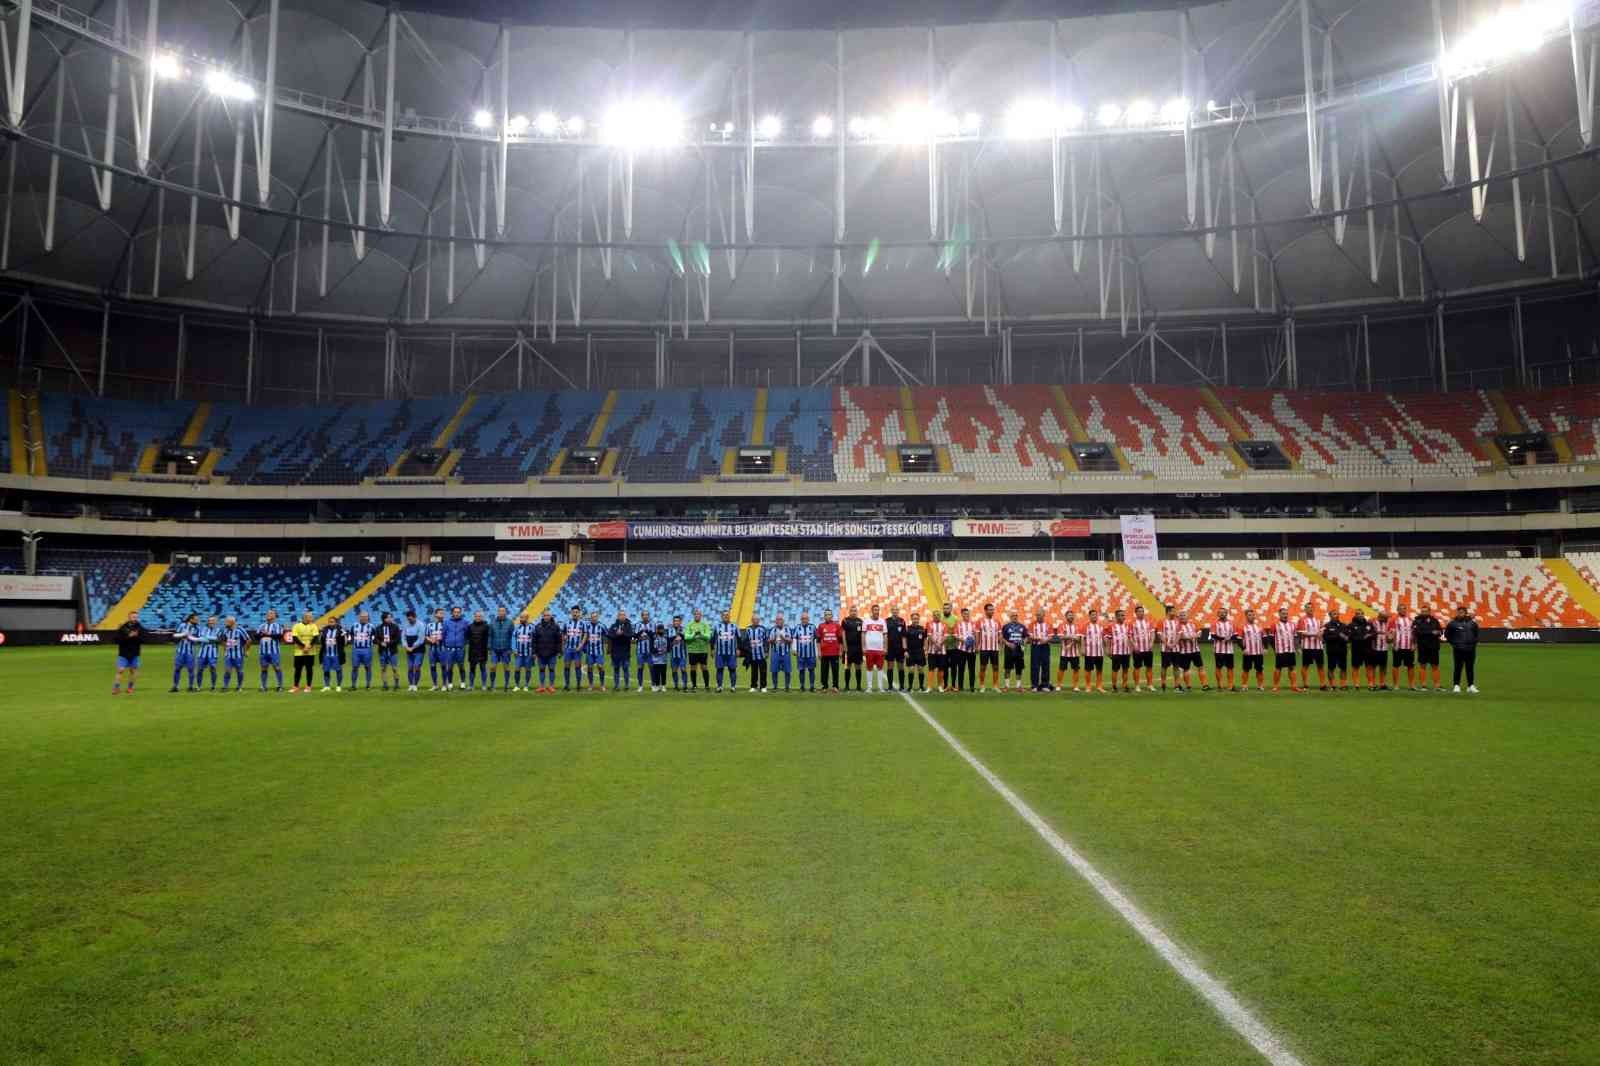 Adanaspor ve Adana Demirspor’un eski futbolcuları ’Şöhretler Karması’ maçında karşılaştı #adana